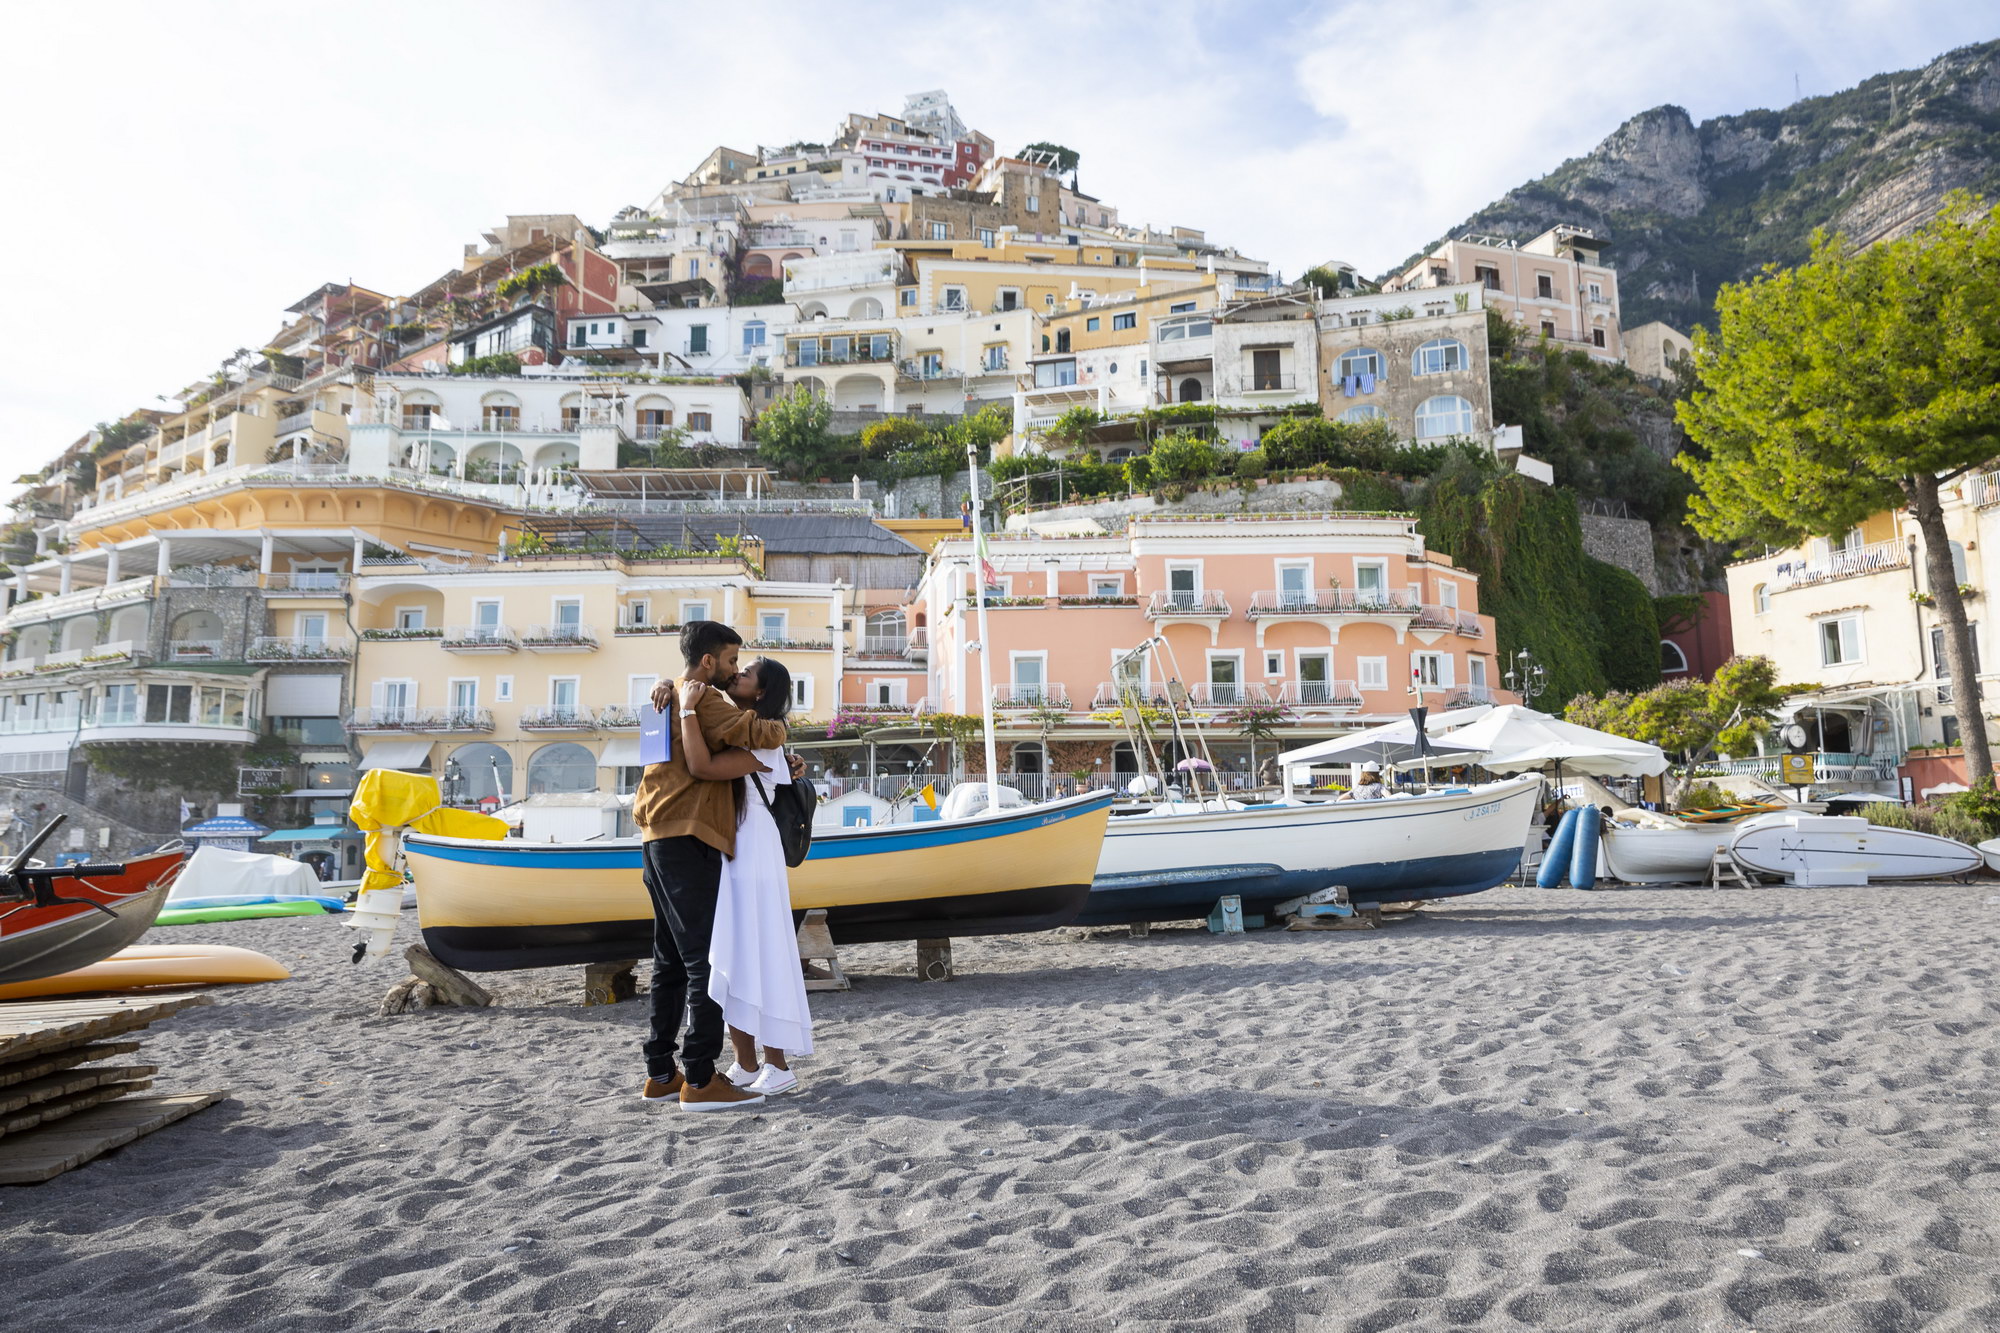 Picture-Perfect Wedding Proposal in Positano Andrea Matone05